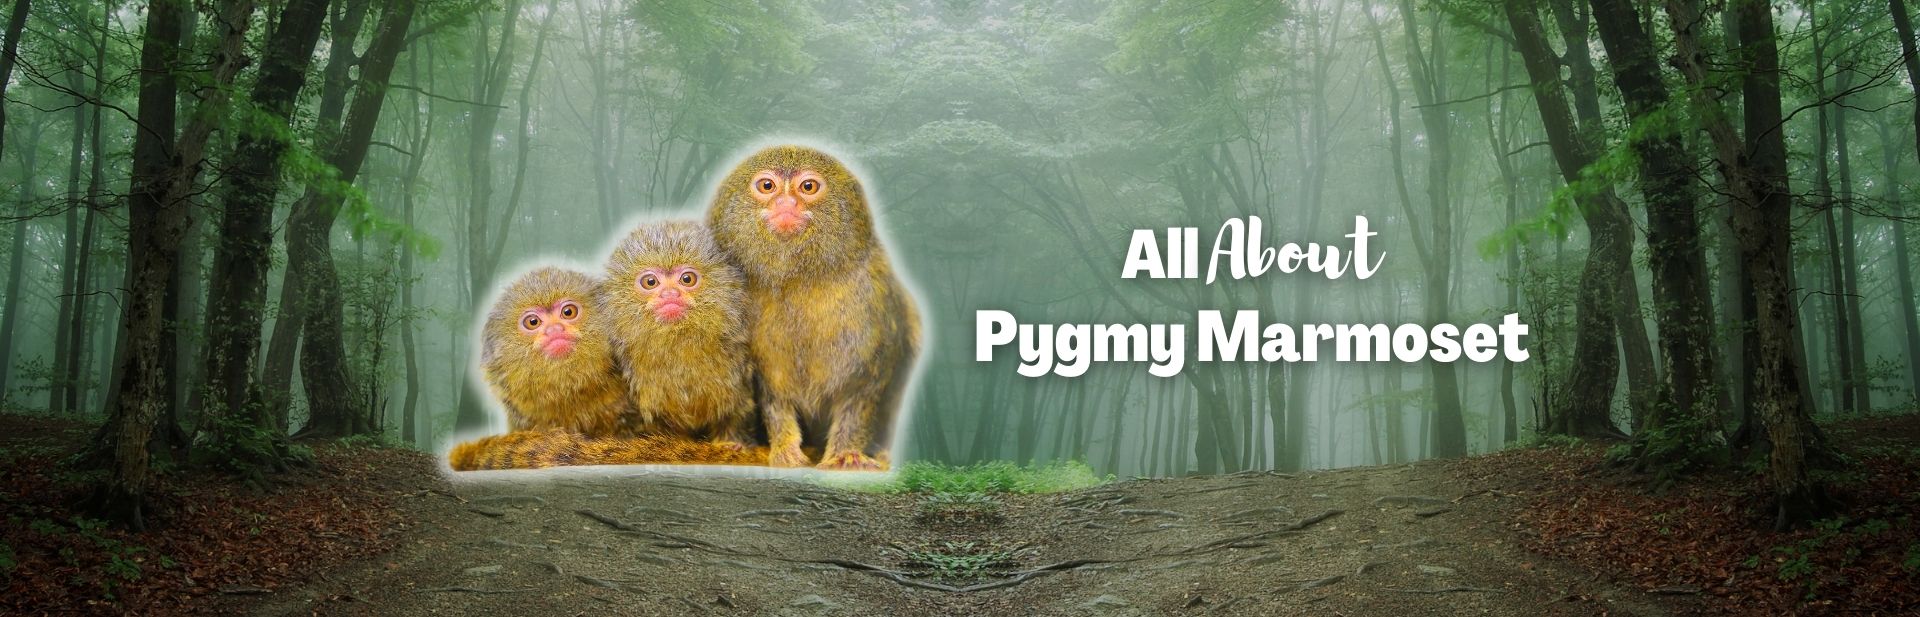 Meet the Pygmy Marmoset: The World’s Smallest Monkey